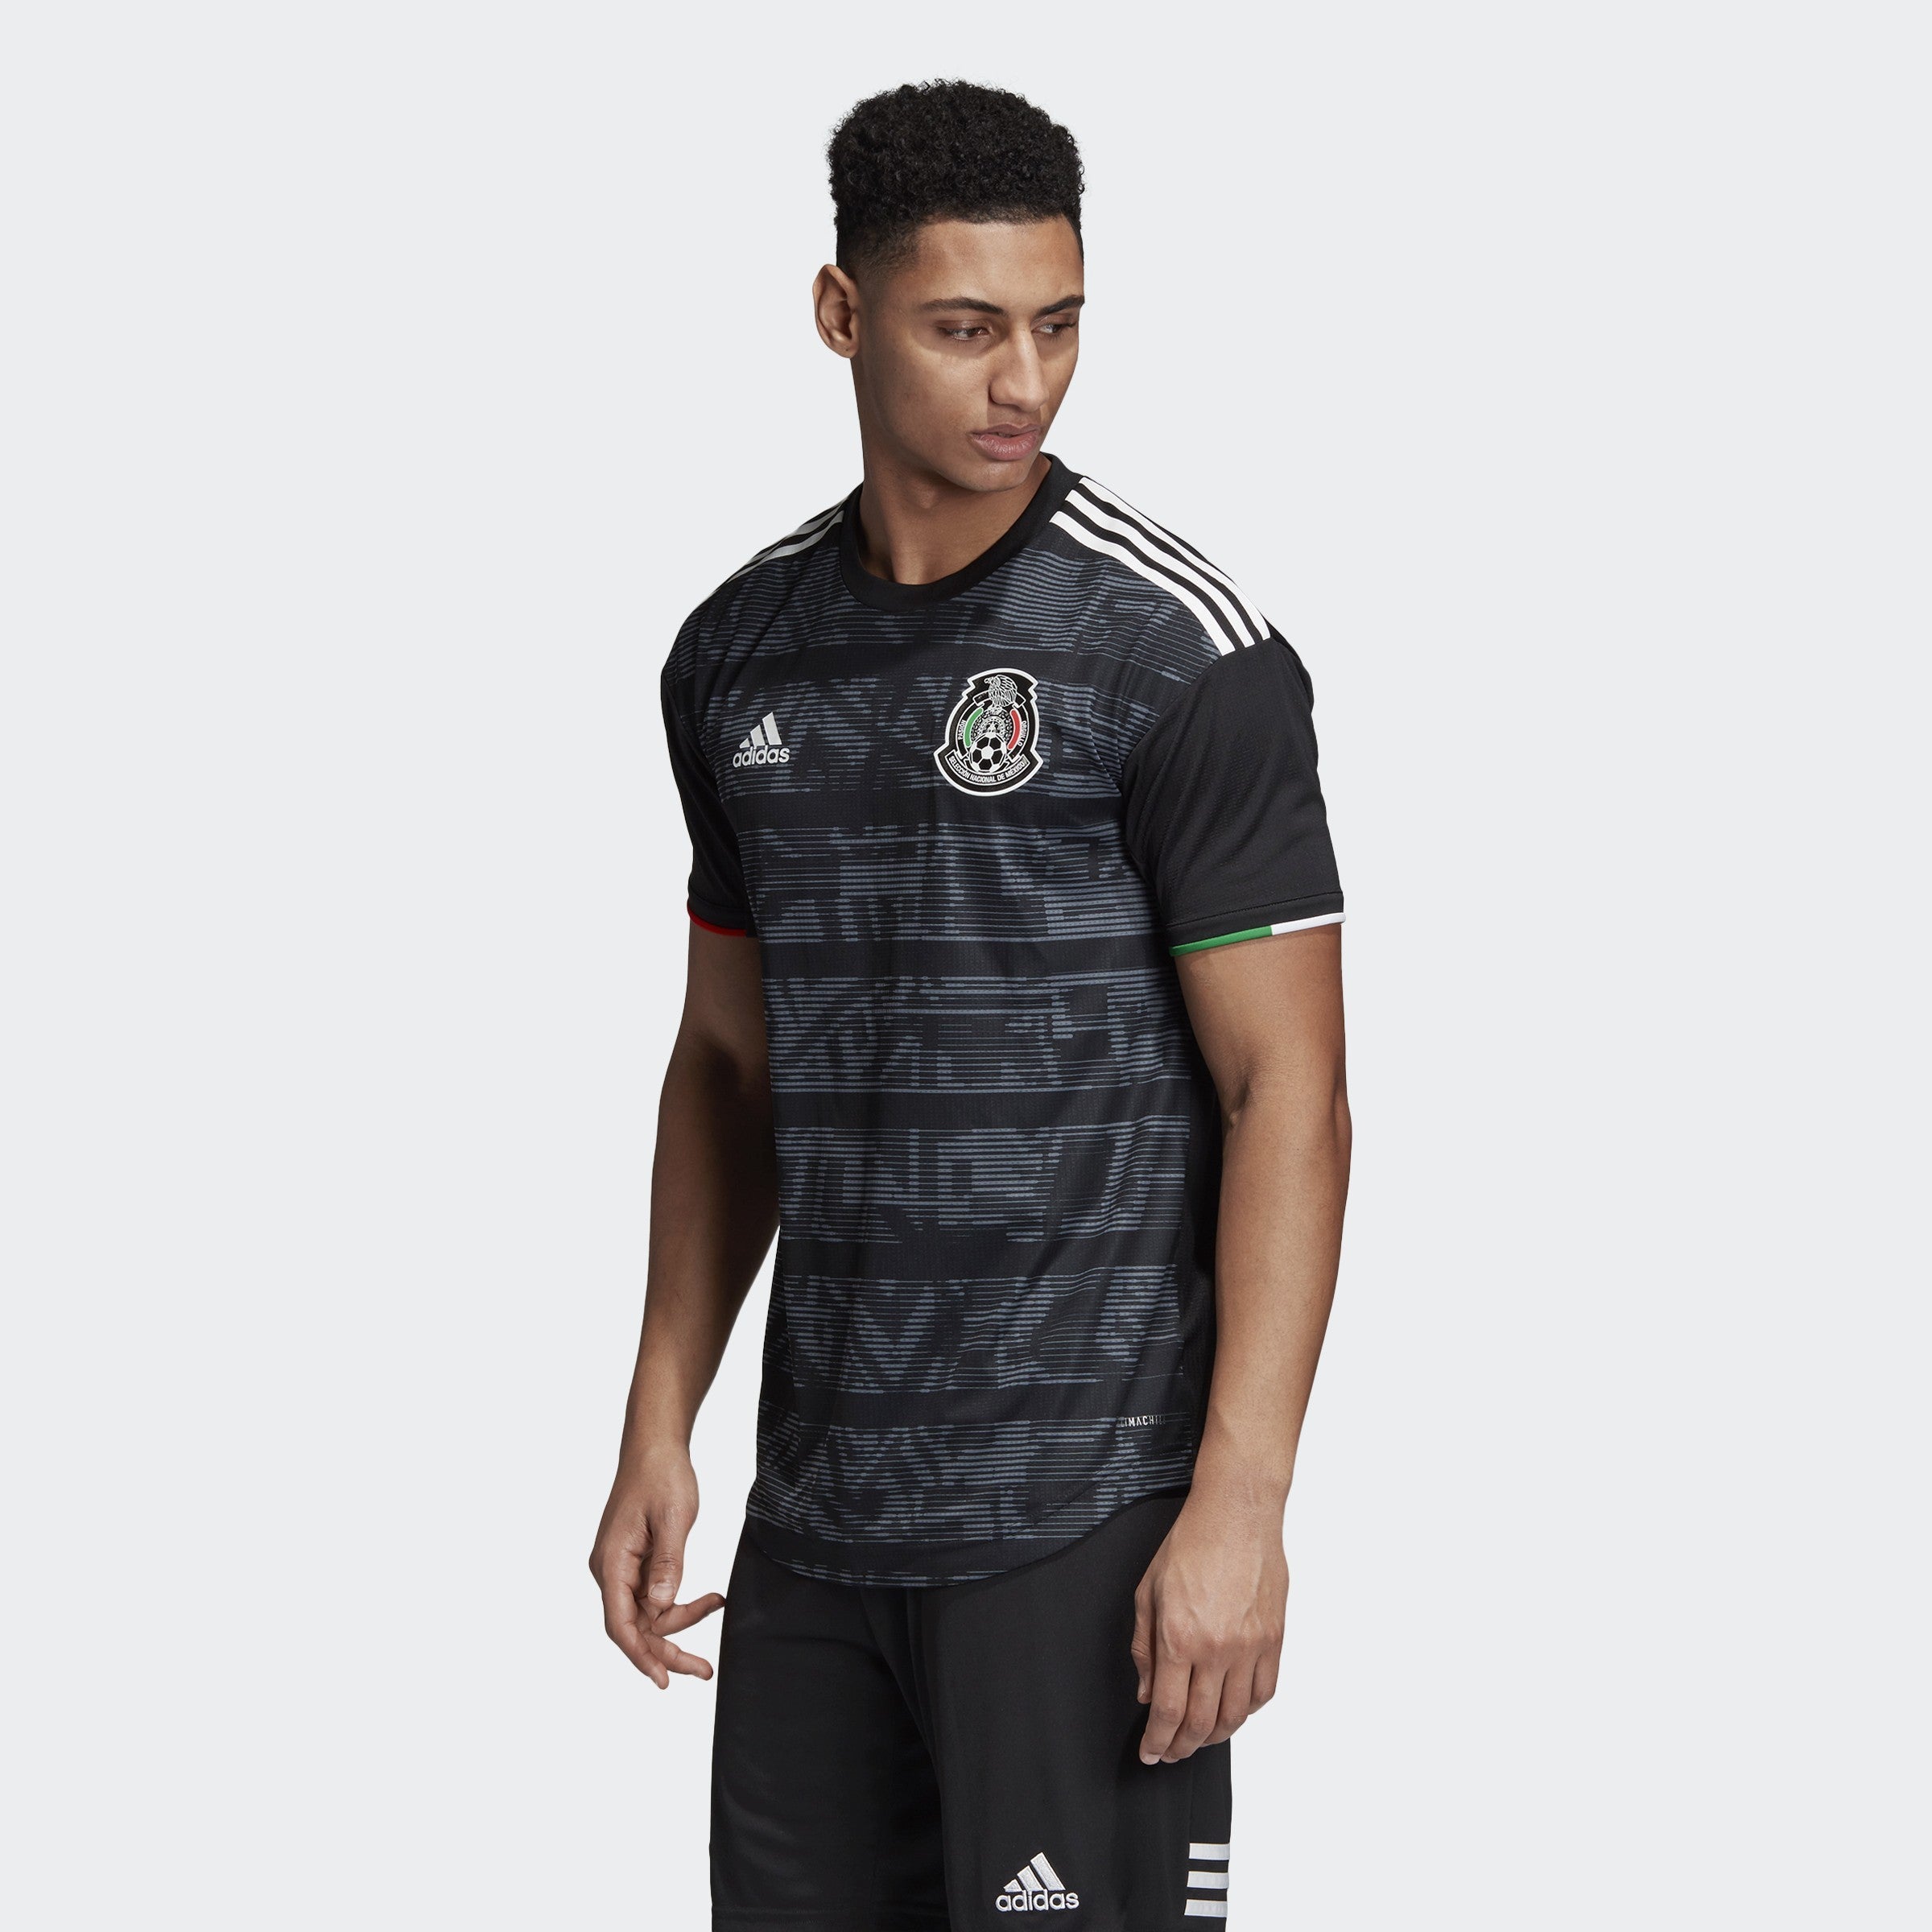 alto A tiempo a la deriva Men's Mexico 2019 Home Authentic Jersey - Black/White